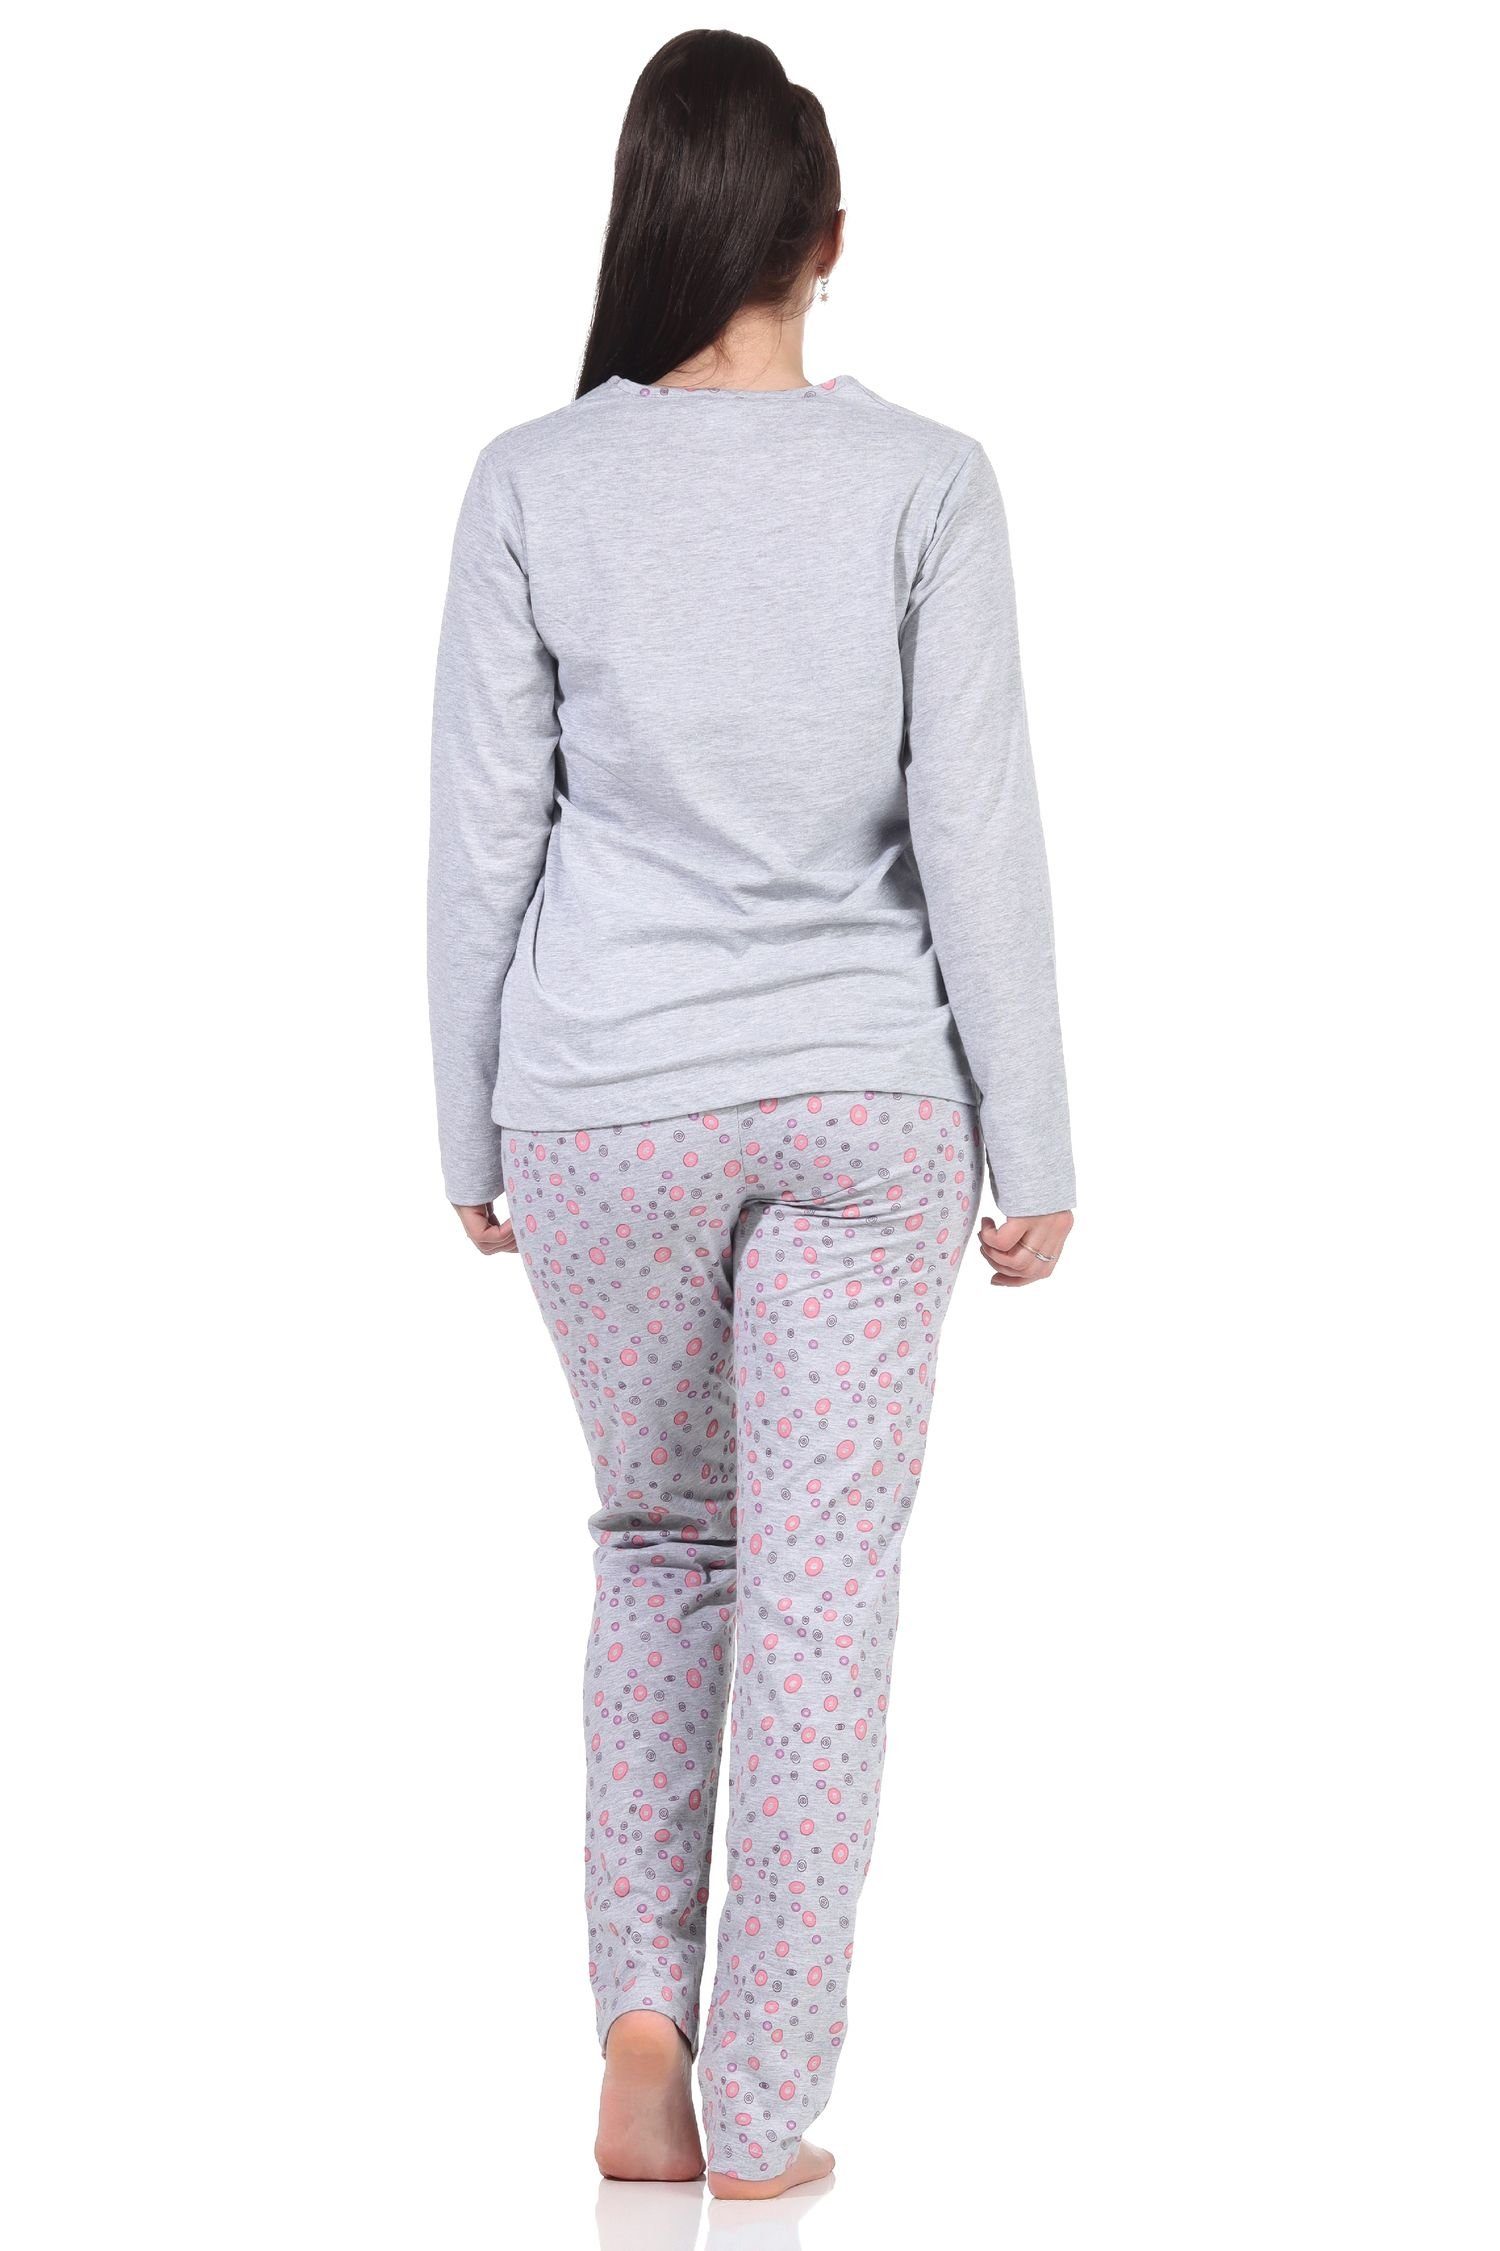 Wäsche/Bademode Pyjamas RELAX by Normann Pyjama Damen langarm Schlafanzug Pyjama mit Schmetterlingen als Motiv - 112 201 10 714